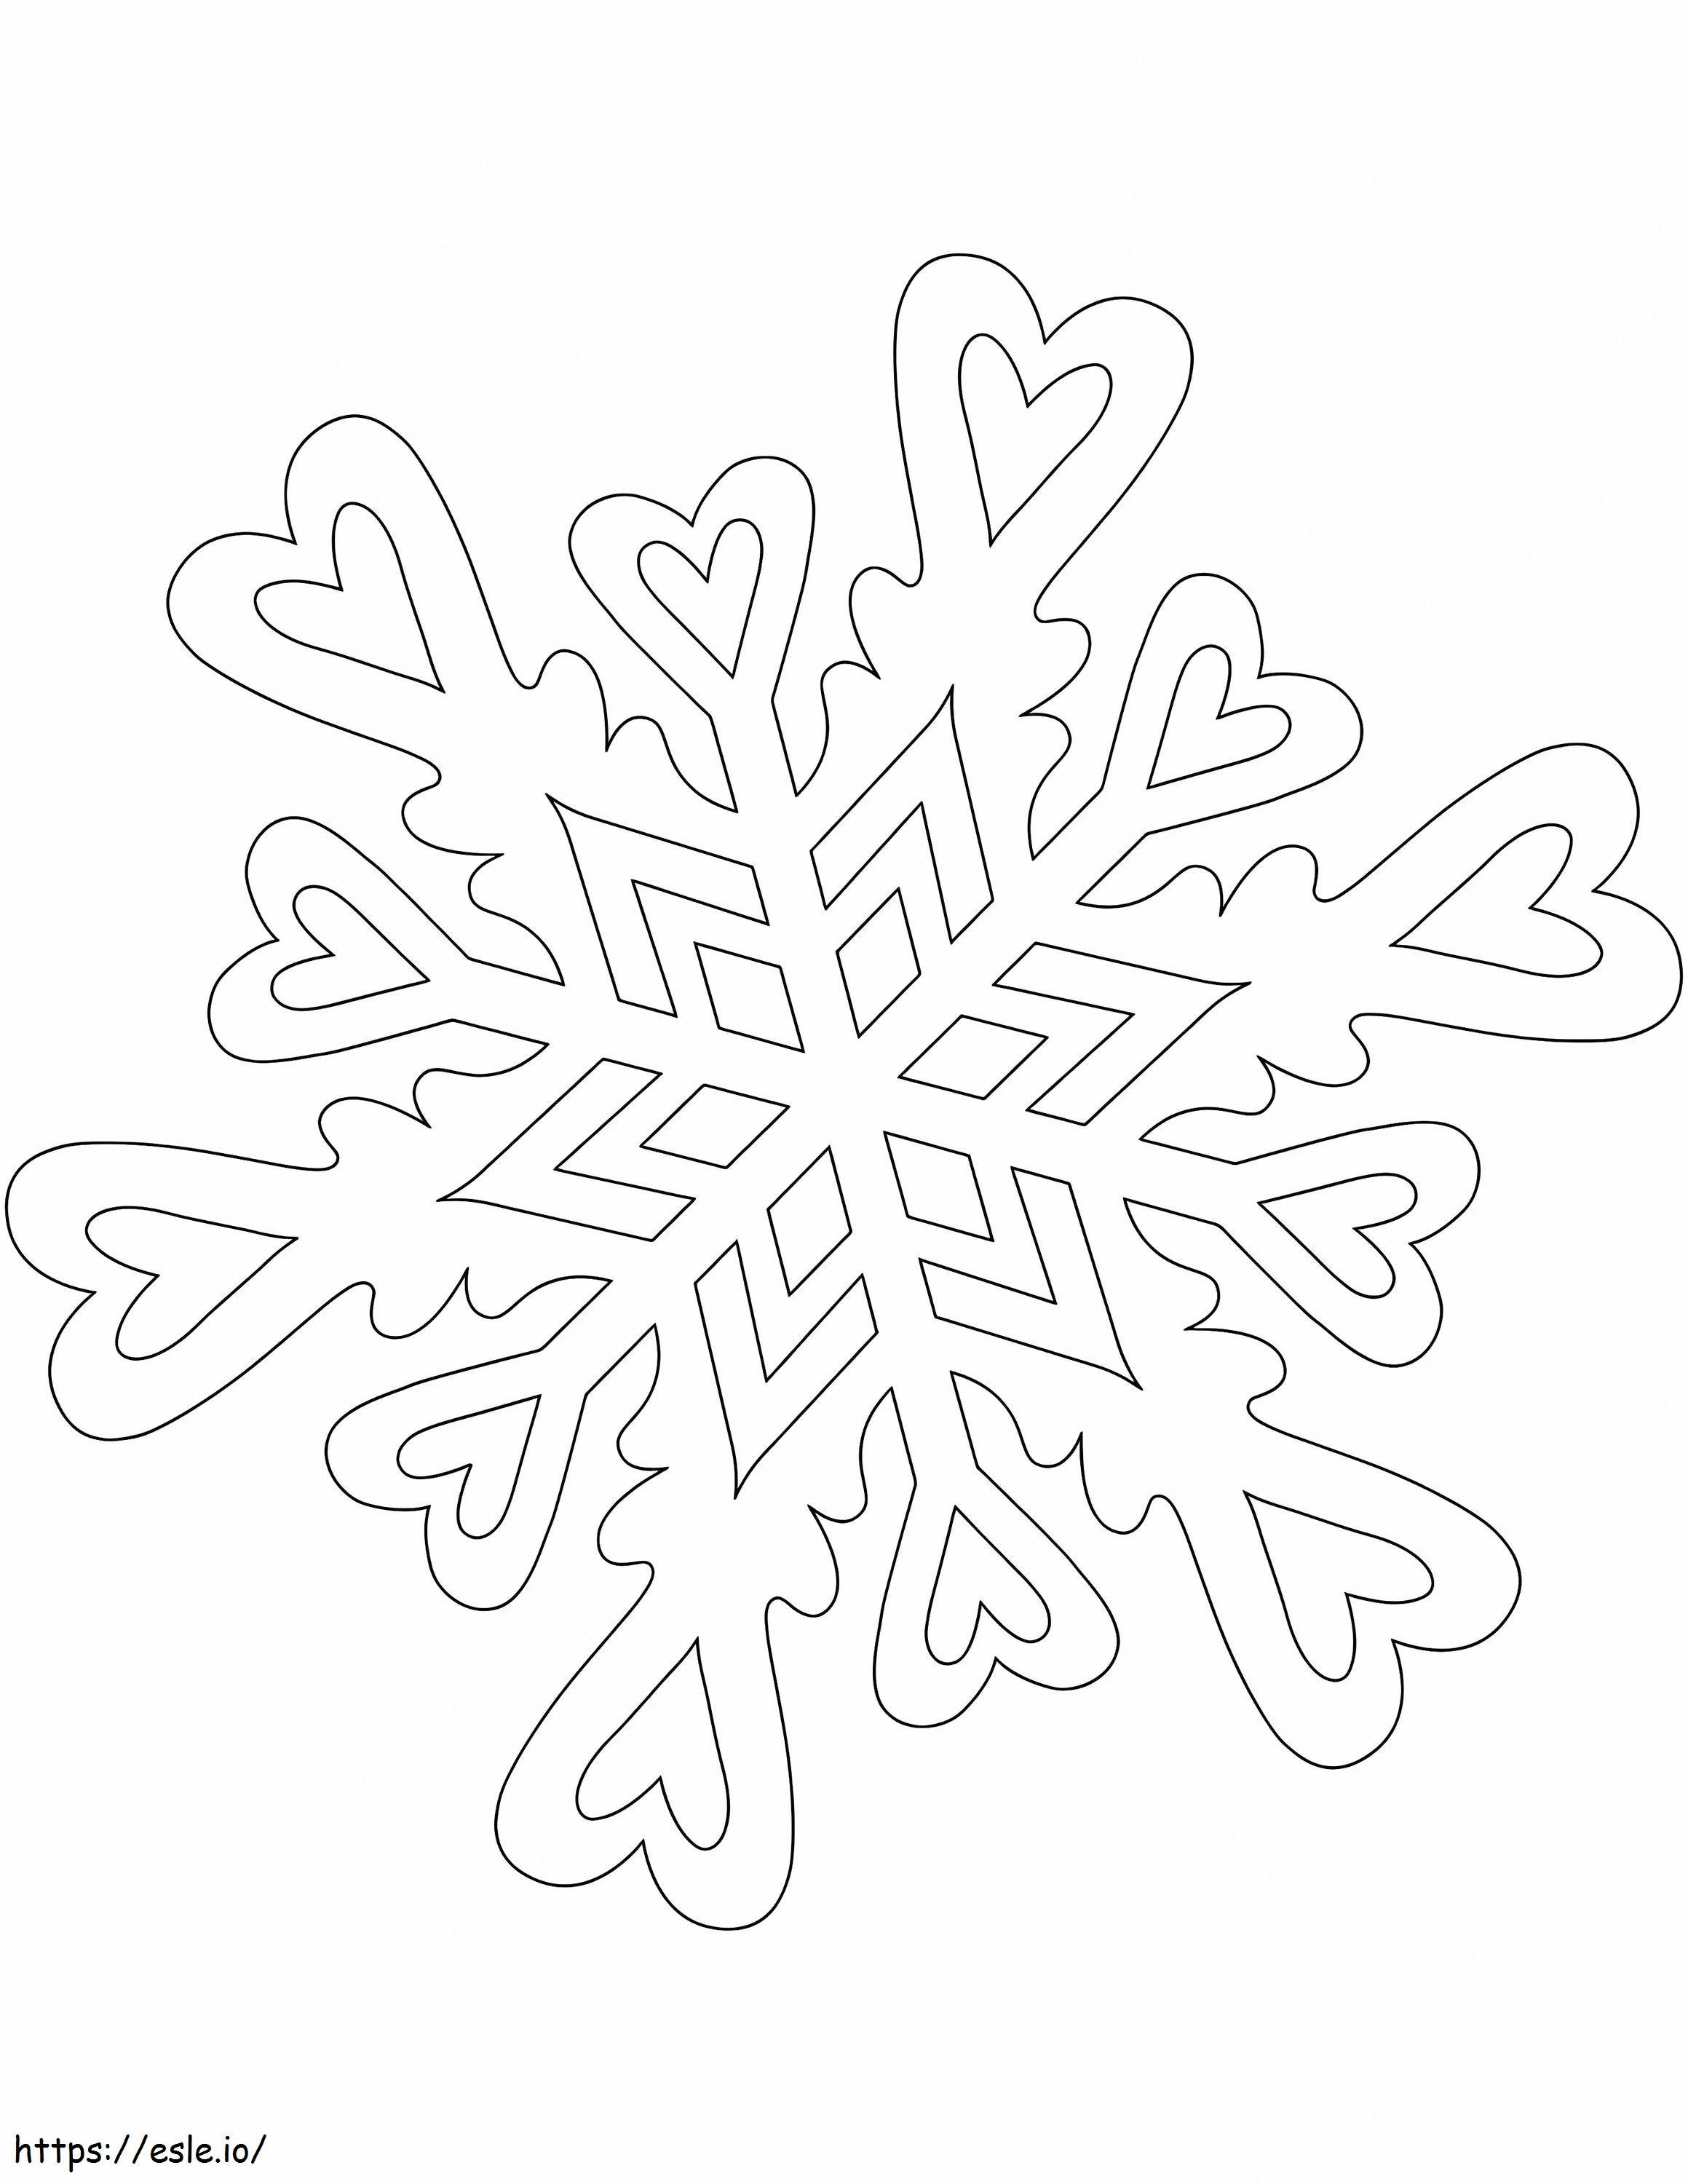  Padrão de Floco de Neve com Corações para colorir